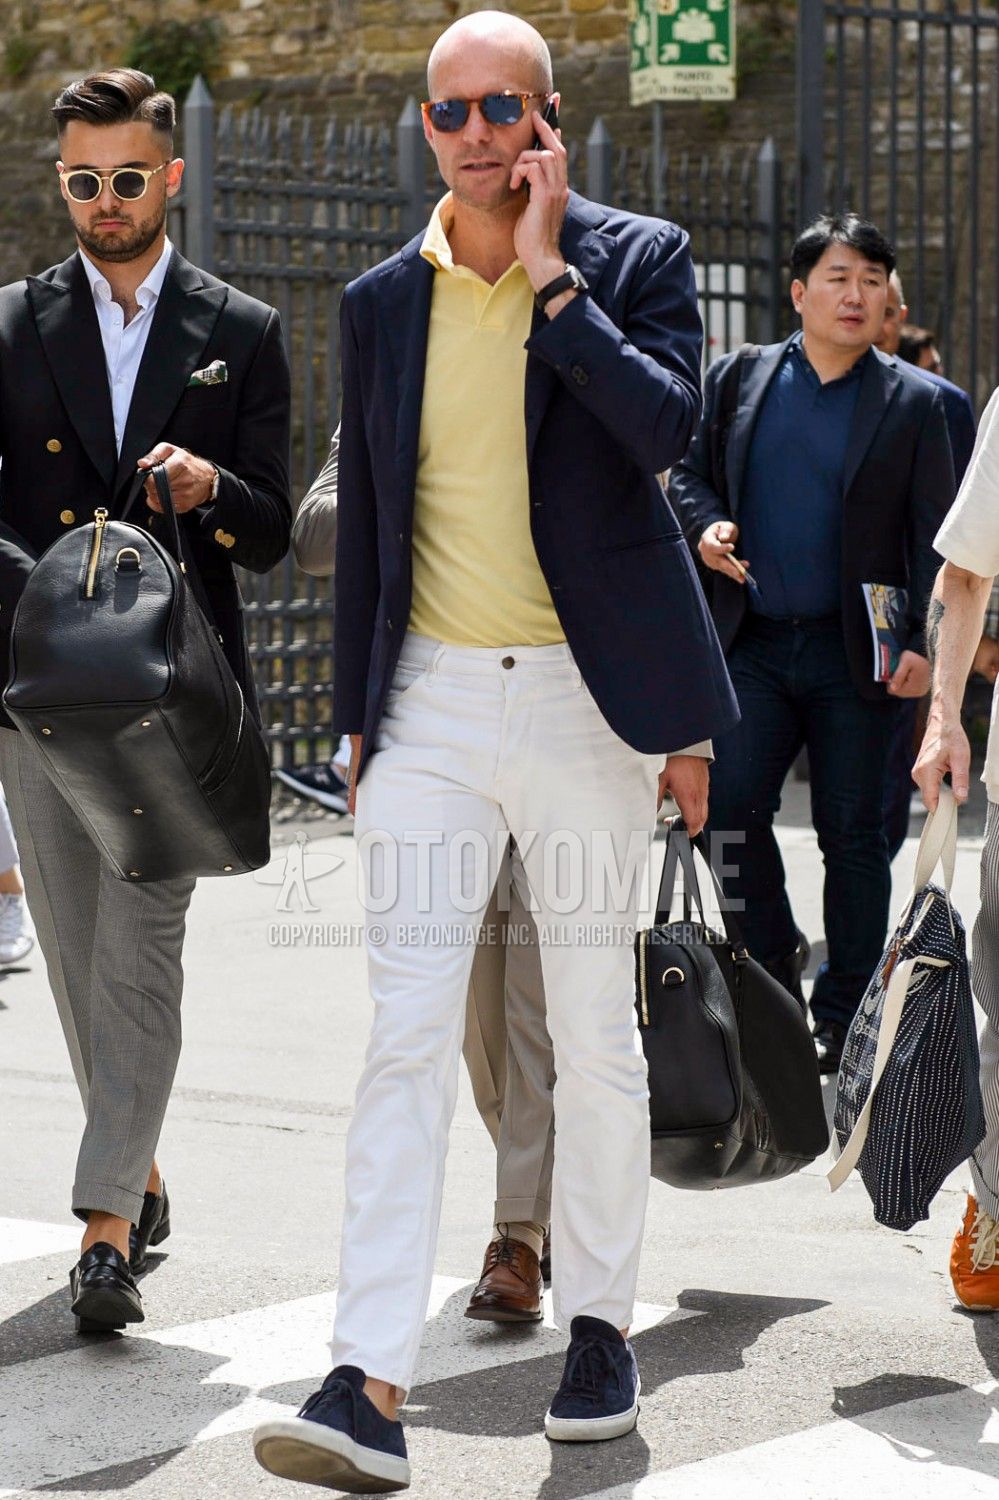 メンズ夏コーデをより爽やかで洒脱にみせる白パンツの着こなし方5選 メンズファッションメディア Otokomaeotokomae 男前研究所